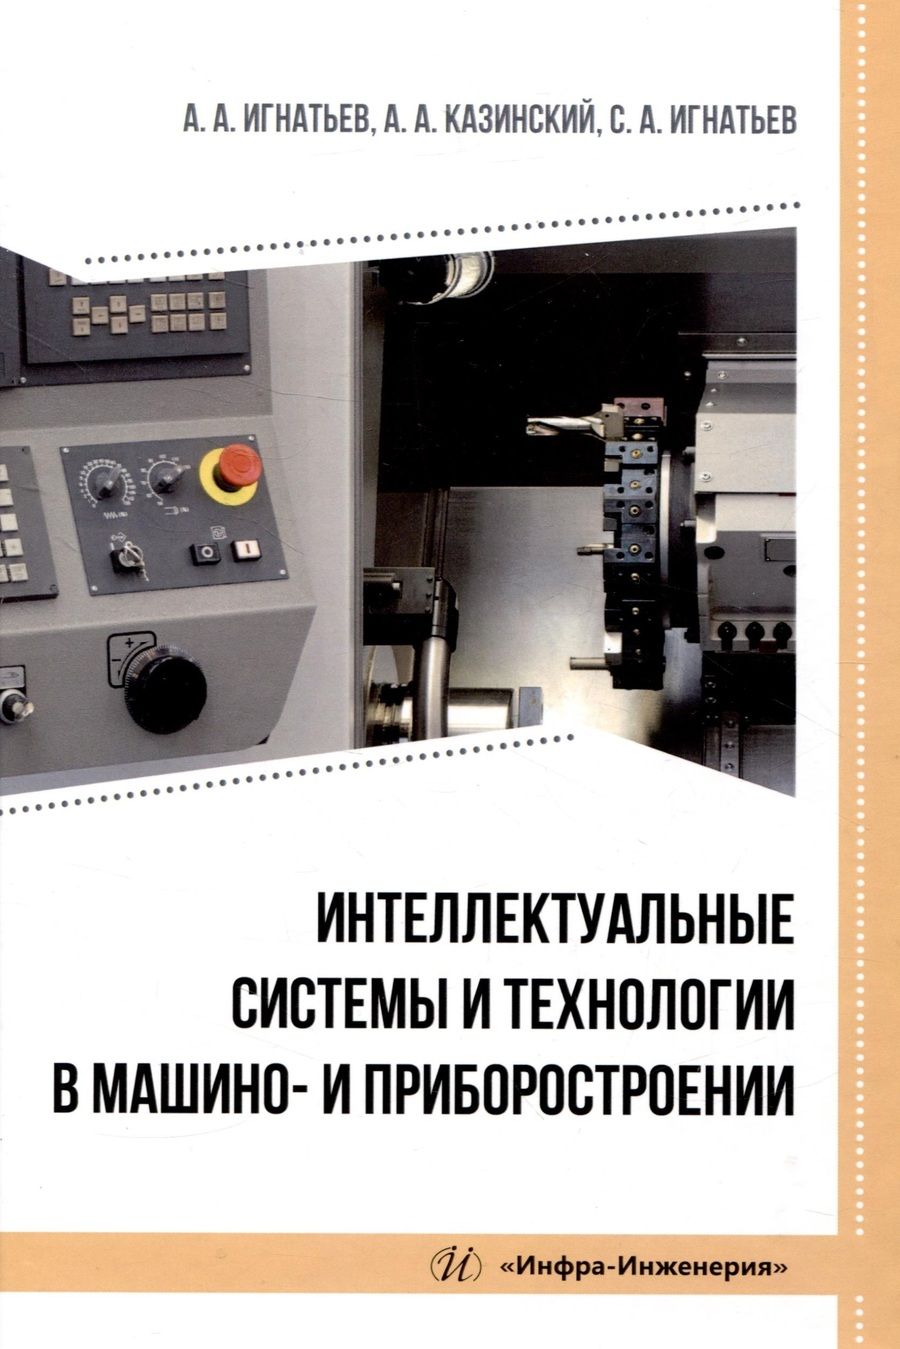 Обложка книги "Игнатьев, Казинский, Игнатьев: Интеллектуальные системы и технологии в машино- и приборостроении. Учебное пособие"